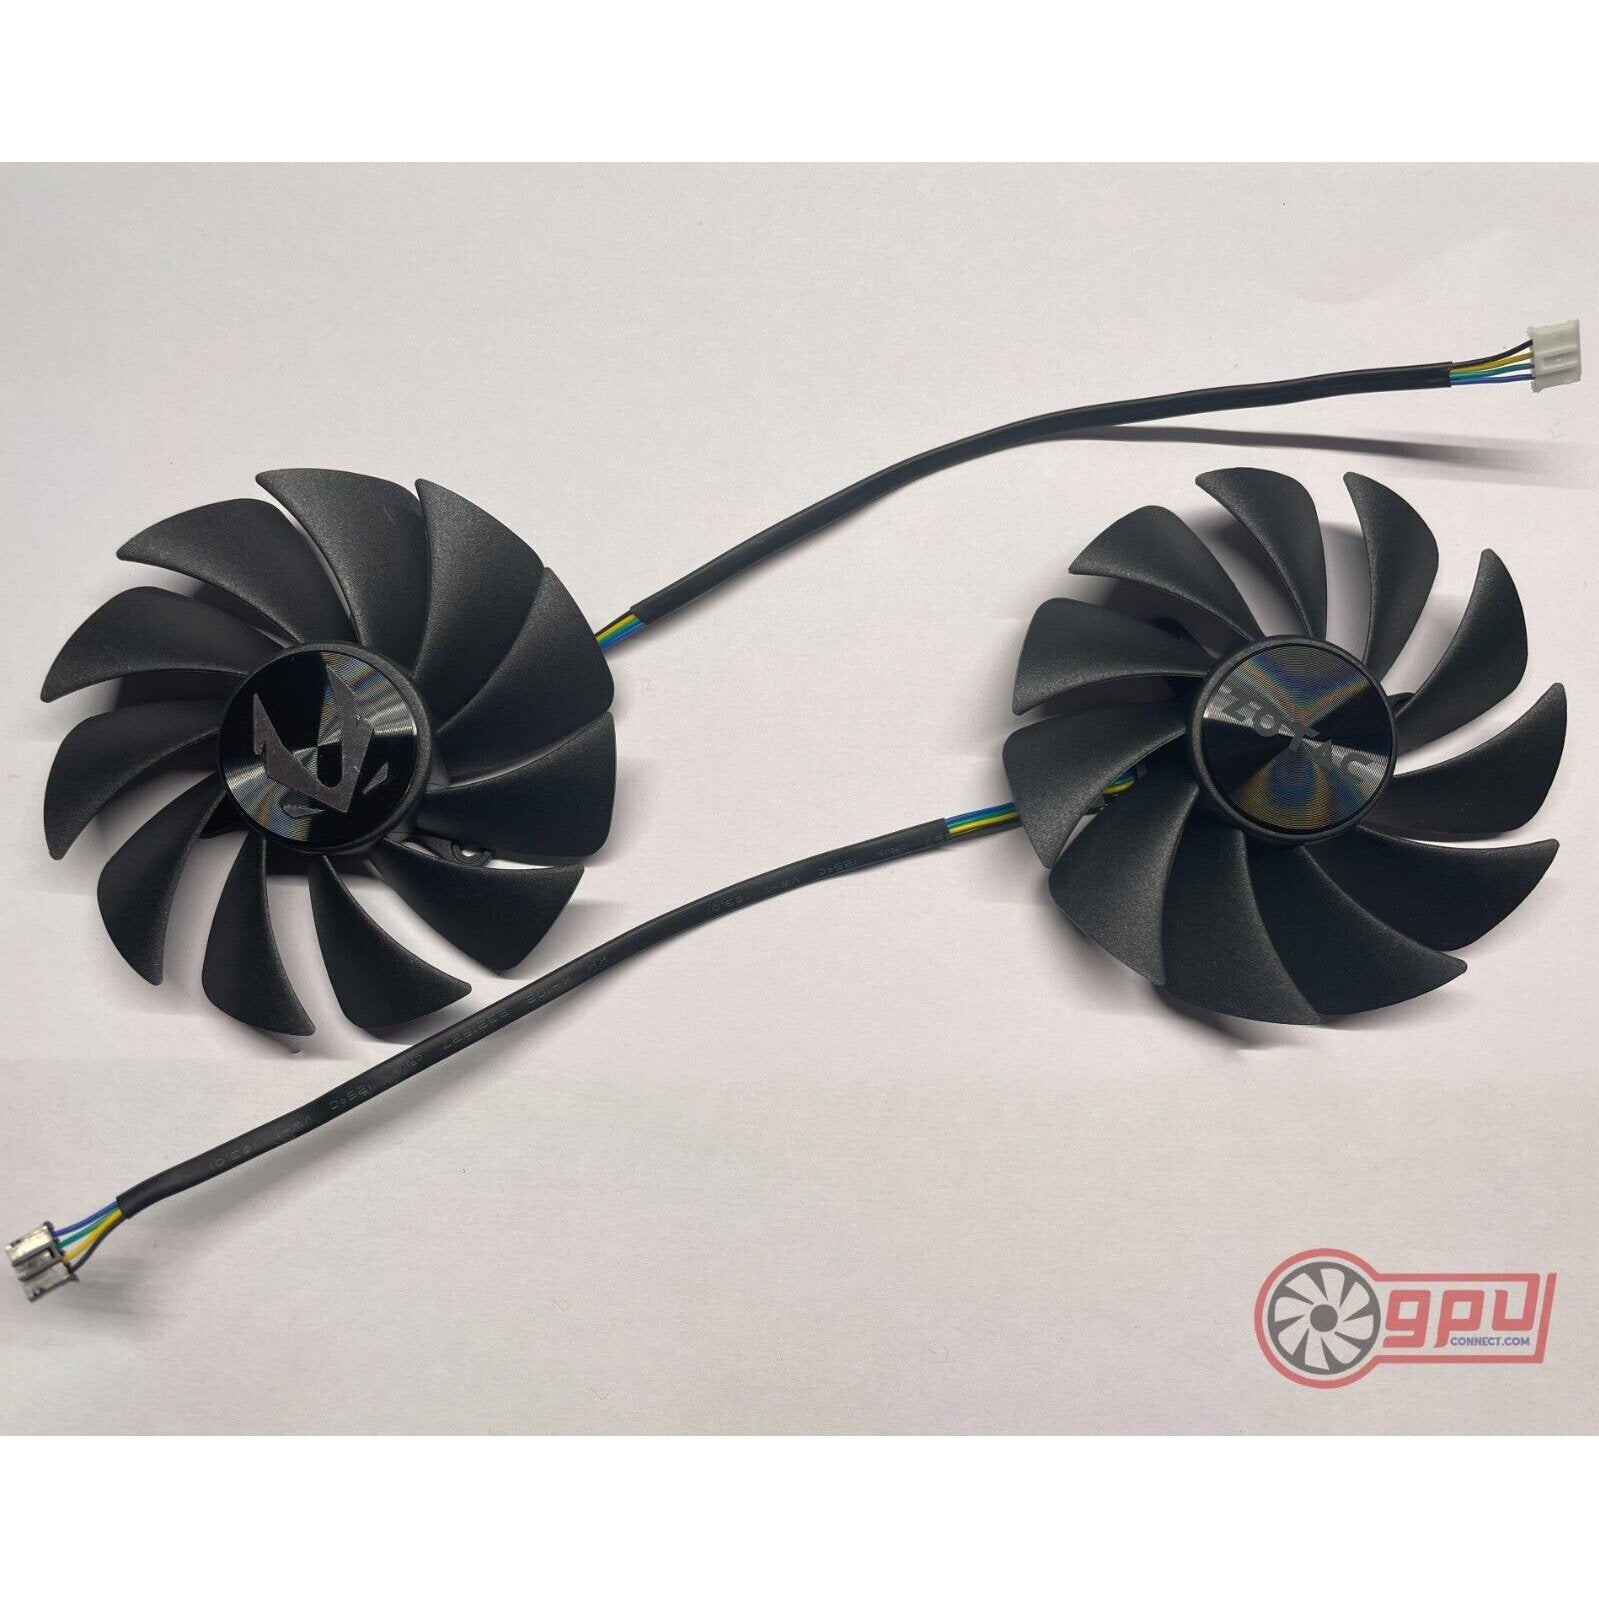 Zotac RTX Ti Twin Edge - Cooling Fans – GPUCONNECT.COM